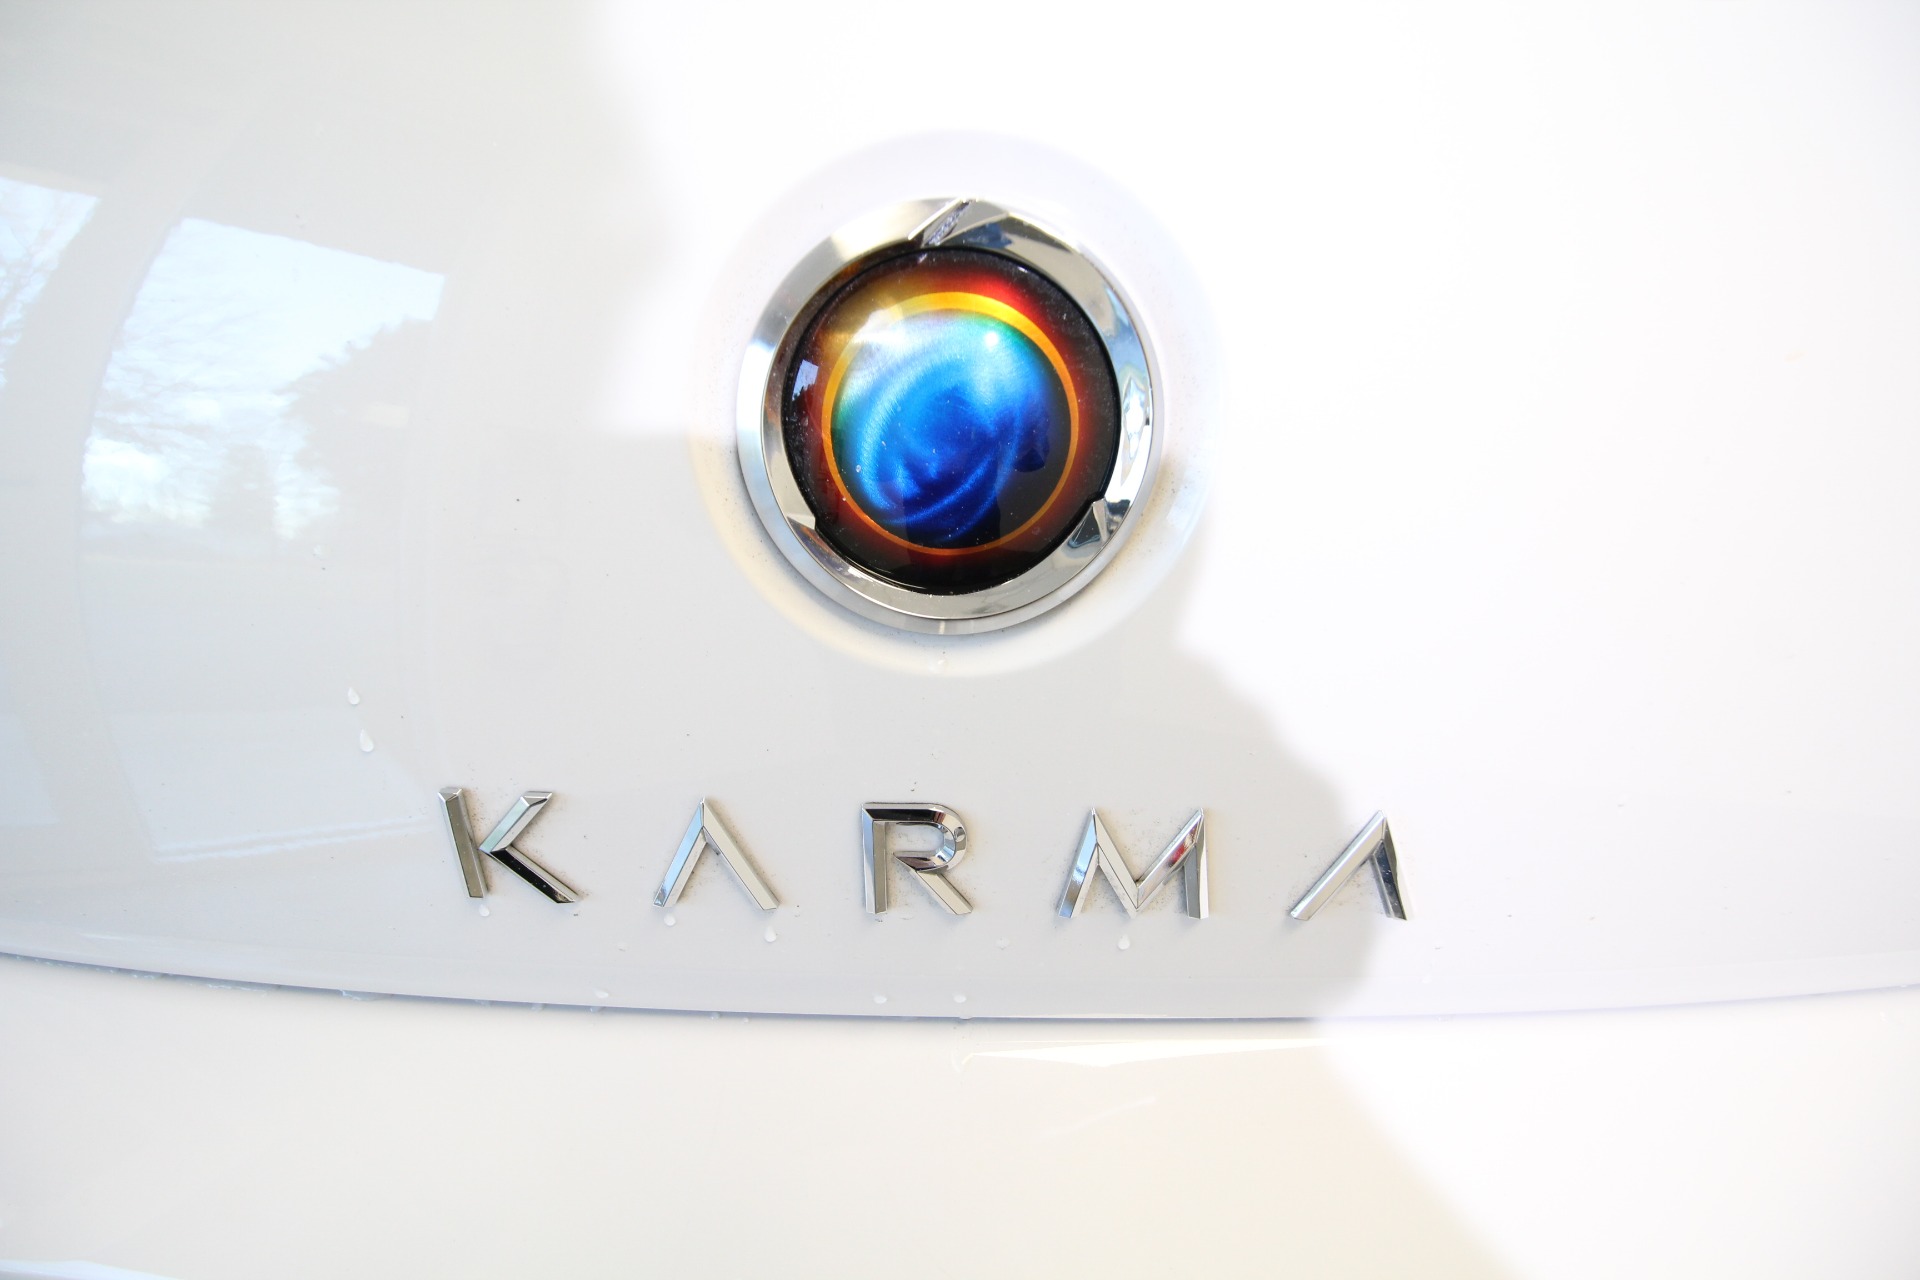 Used 2019 Karma Revero Revero NEW KARMA TRADE LOCAL LIKE NEW LONG WARRANTY | Albany, NY